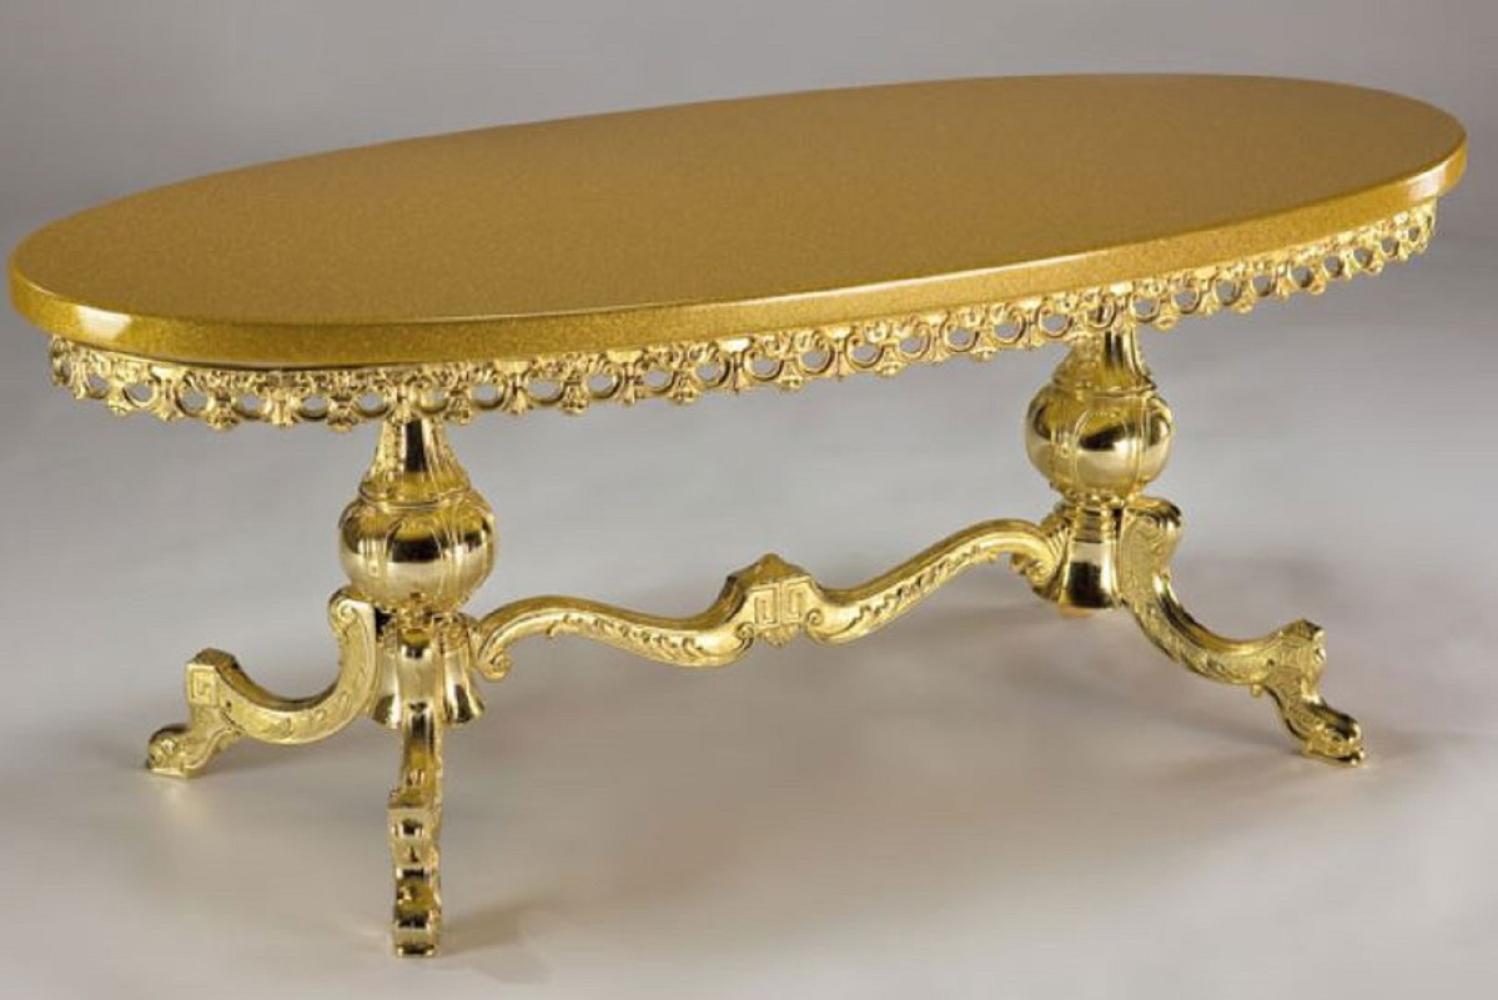 Casa Padrino Luxus Barock Couchtisch Gold 121 x 51 x H. 47 cm - Ovaler Messing Wohnzimmertisch mit Massivholz Tischplatte - Wohnzimmer Möbel im Barockstil - Edle Barock Möbel Bild 1